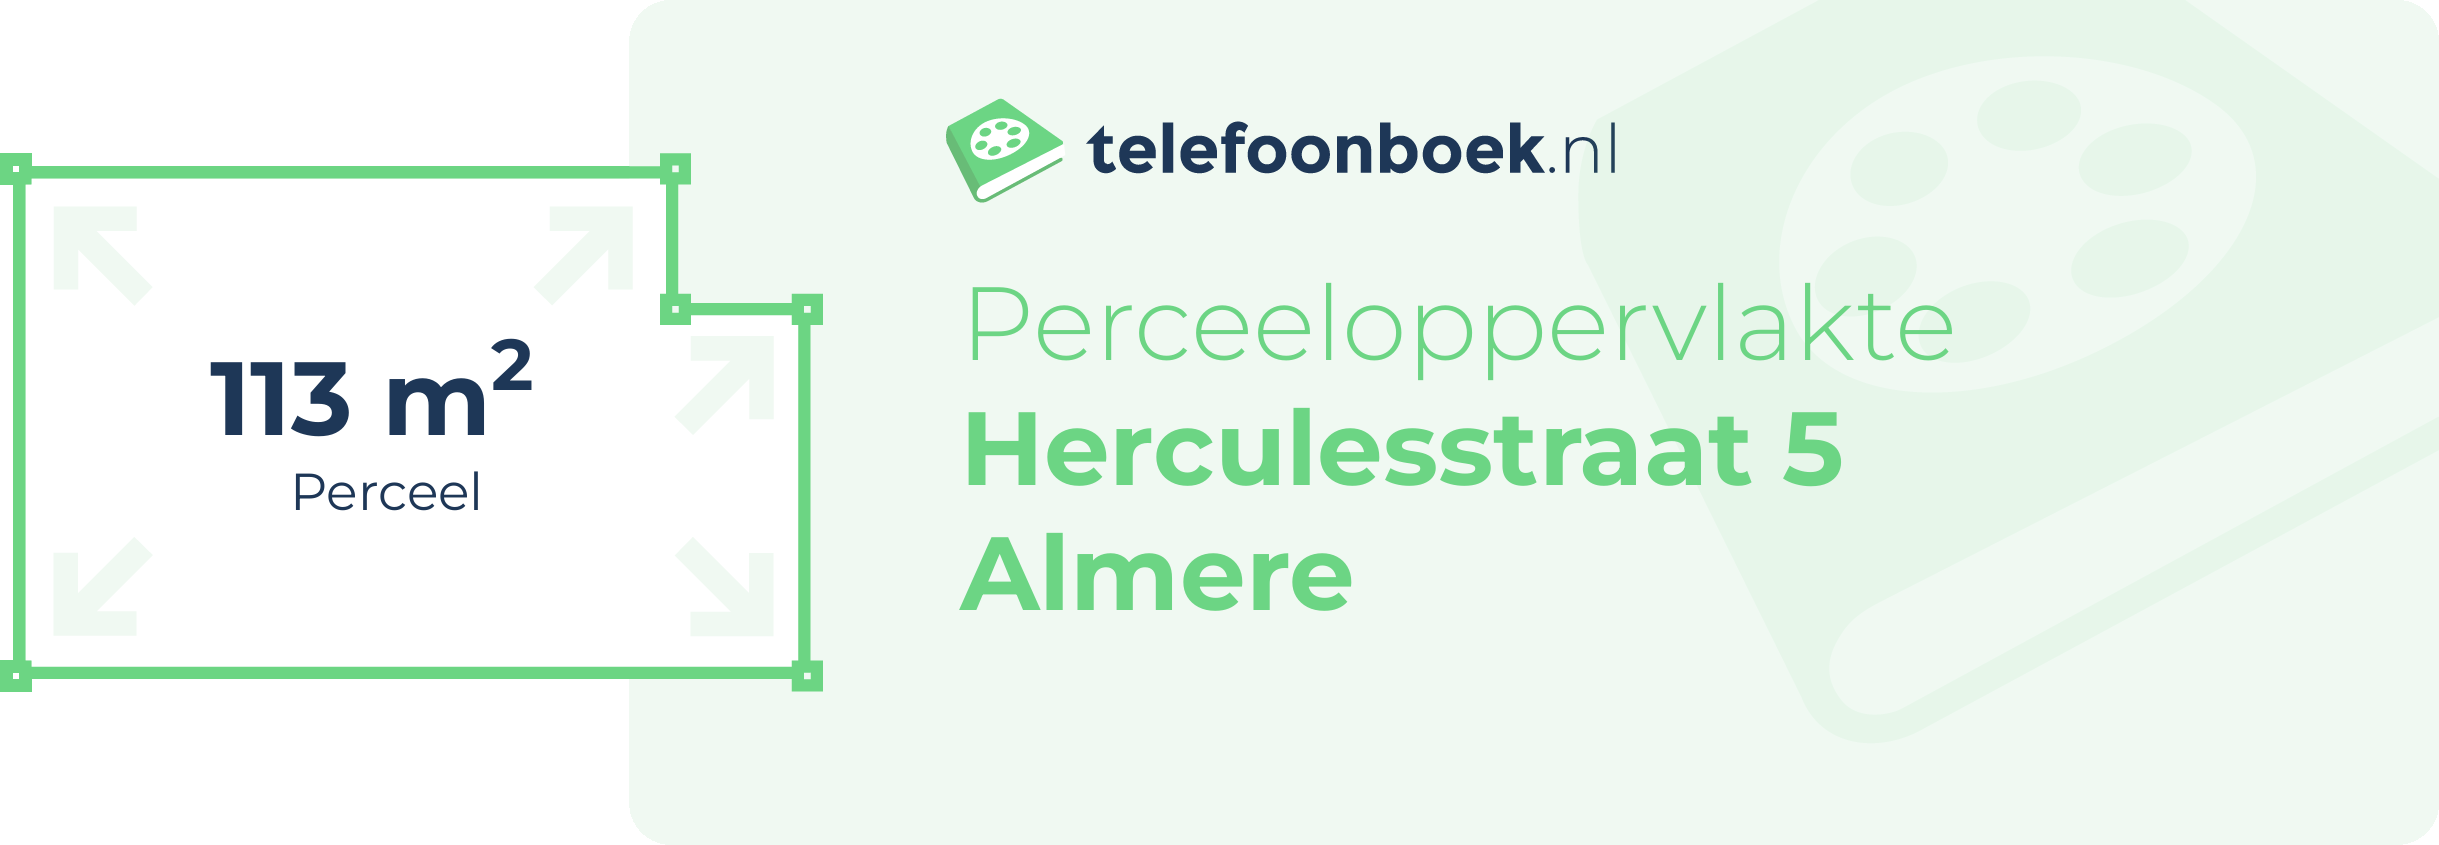 Perceeloppervlakte Herculesstraat 5 Almere